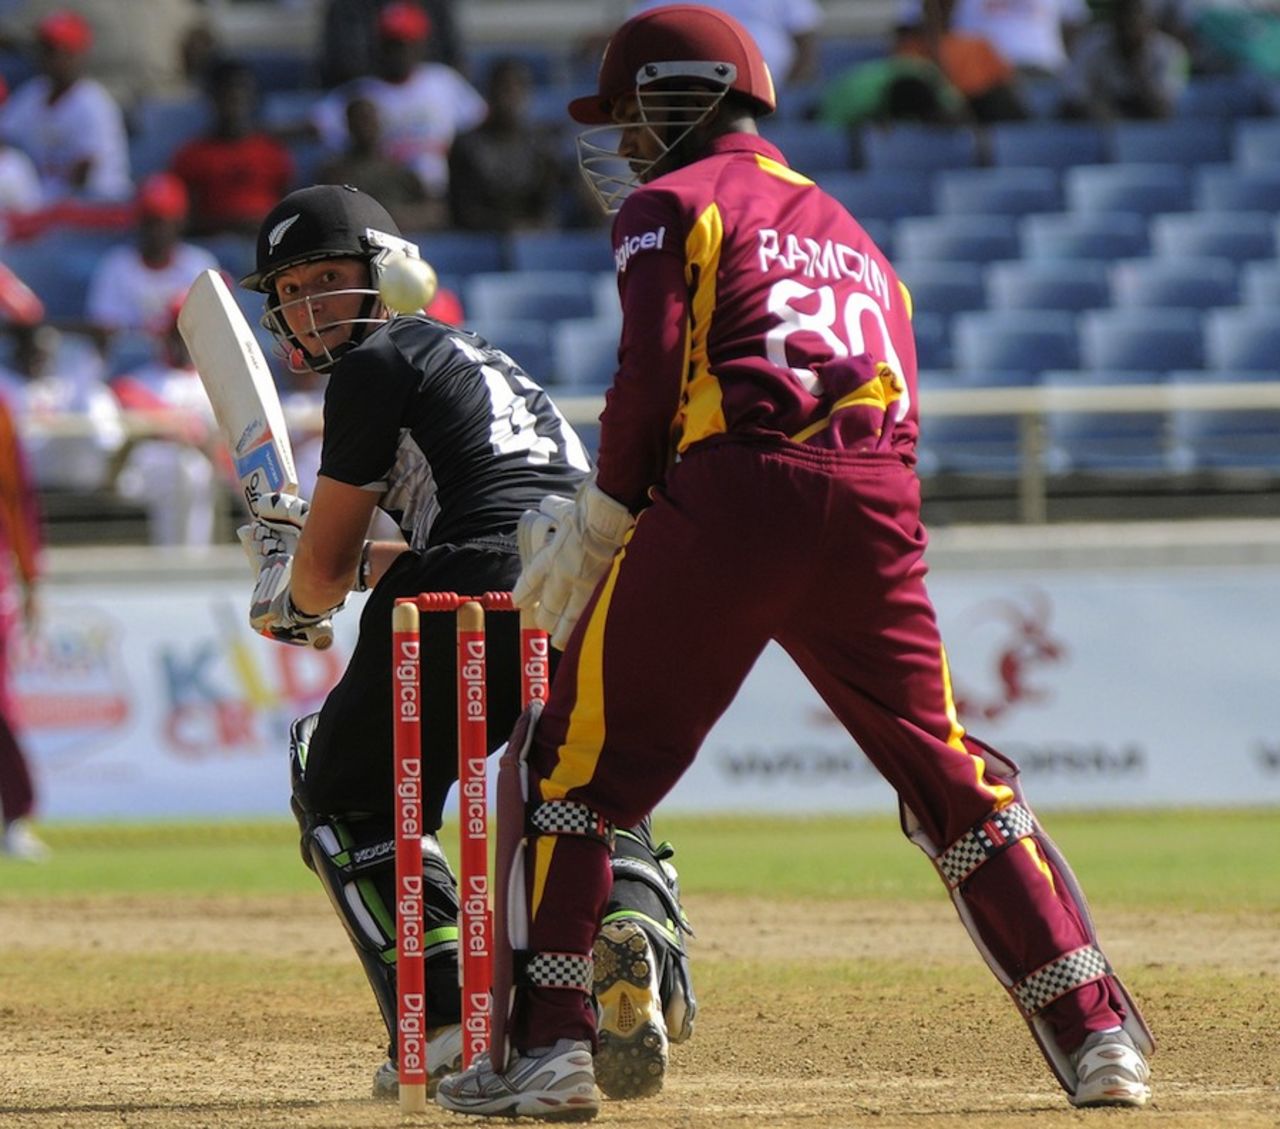 BJ Watling scored an unbeaten 72, West Indies v New Zealand, 2nd ODI, Kingston, July 7, 2012